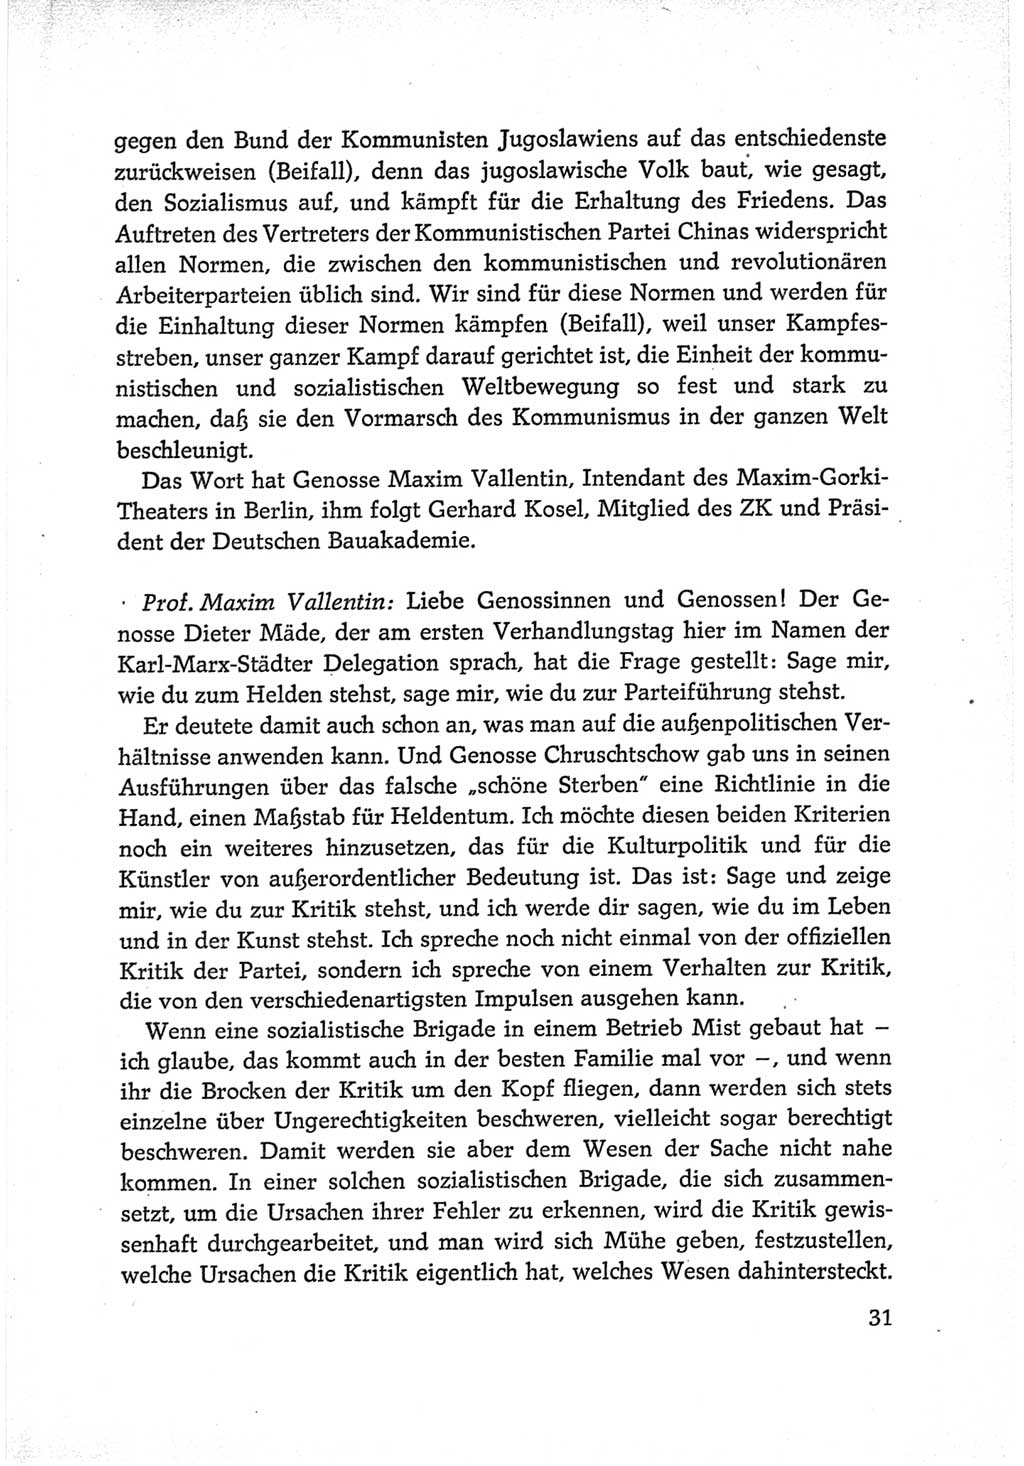 Protokoll der Verhandlungen des Ⅵ. Parteitages der Sozialistischen Einheitspartei Deutschlands (SED) [Deutsche Demokratische Republik (DDR)] 1963, Band Ⅱ, Seite 31 (Prot. Verh. Ⅵ. PT SED DDR 1963, Bd. Ⅱ, S. 31)